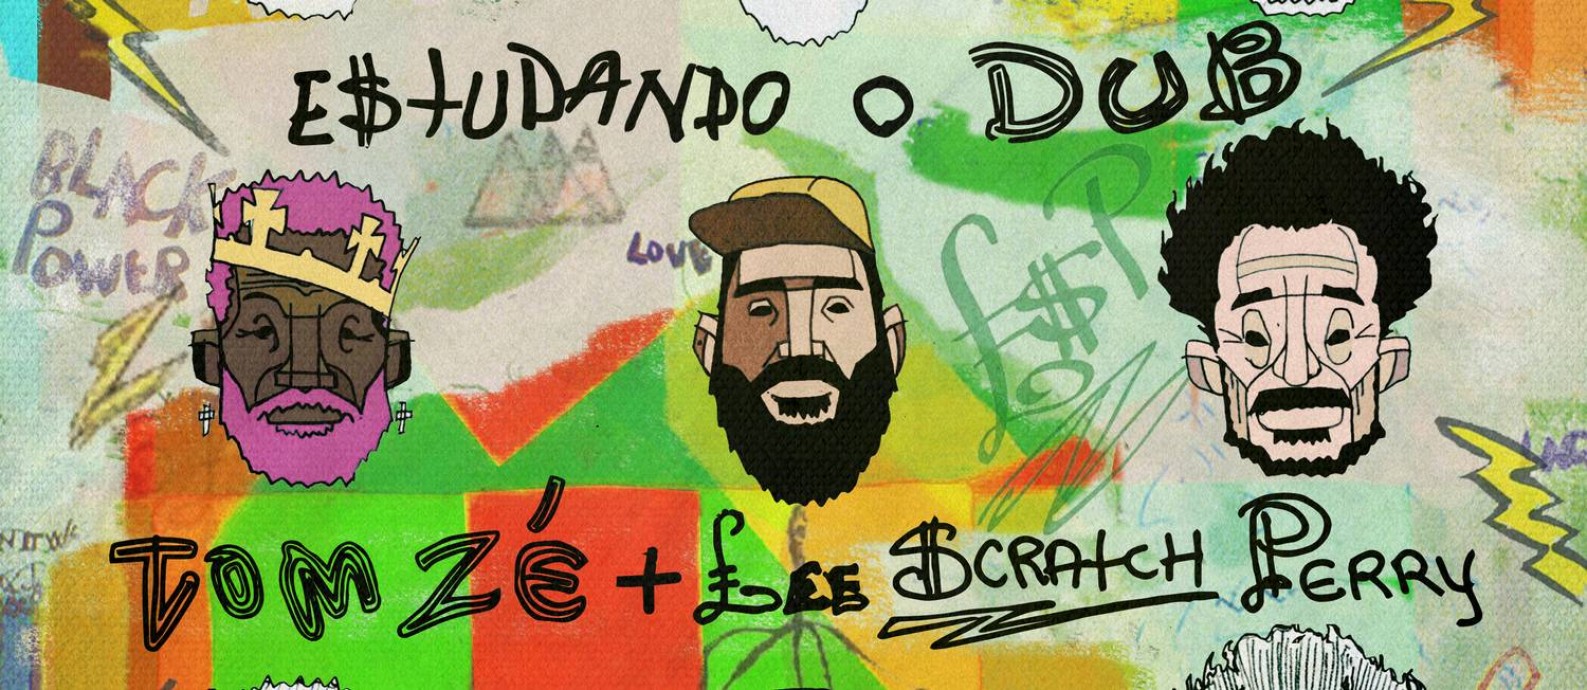 Detalhe da capa do single 'Estudando o dub', de Lee Perry, Tom Zé e Digitaldubs Foto: Reprodução